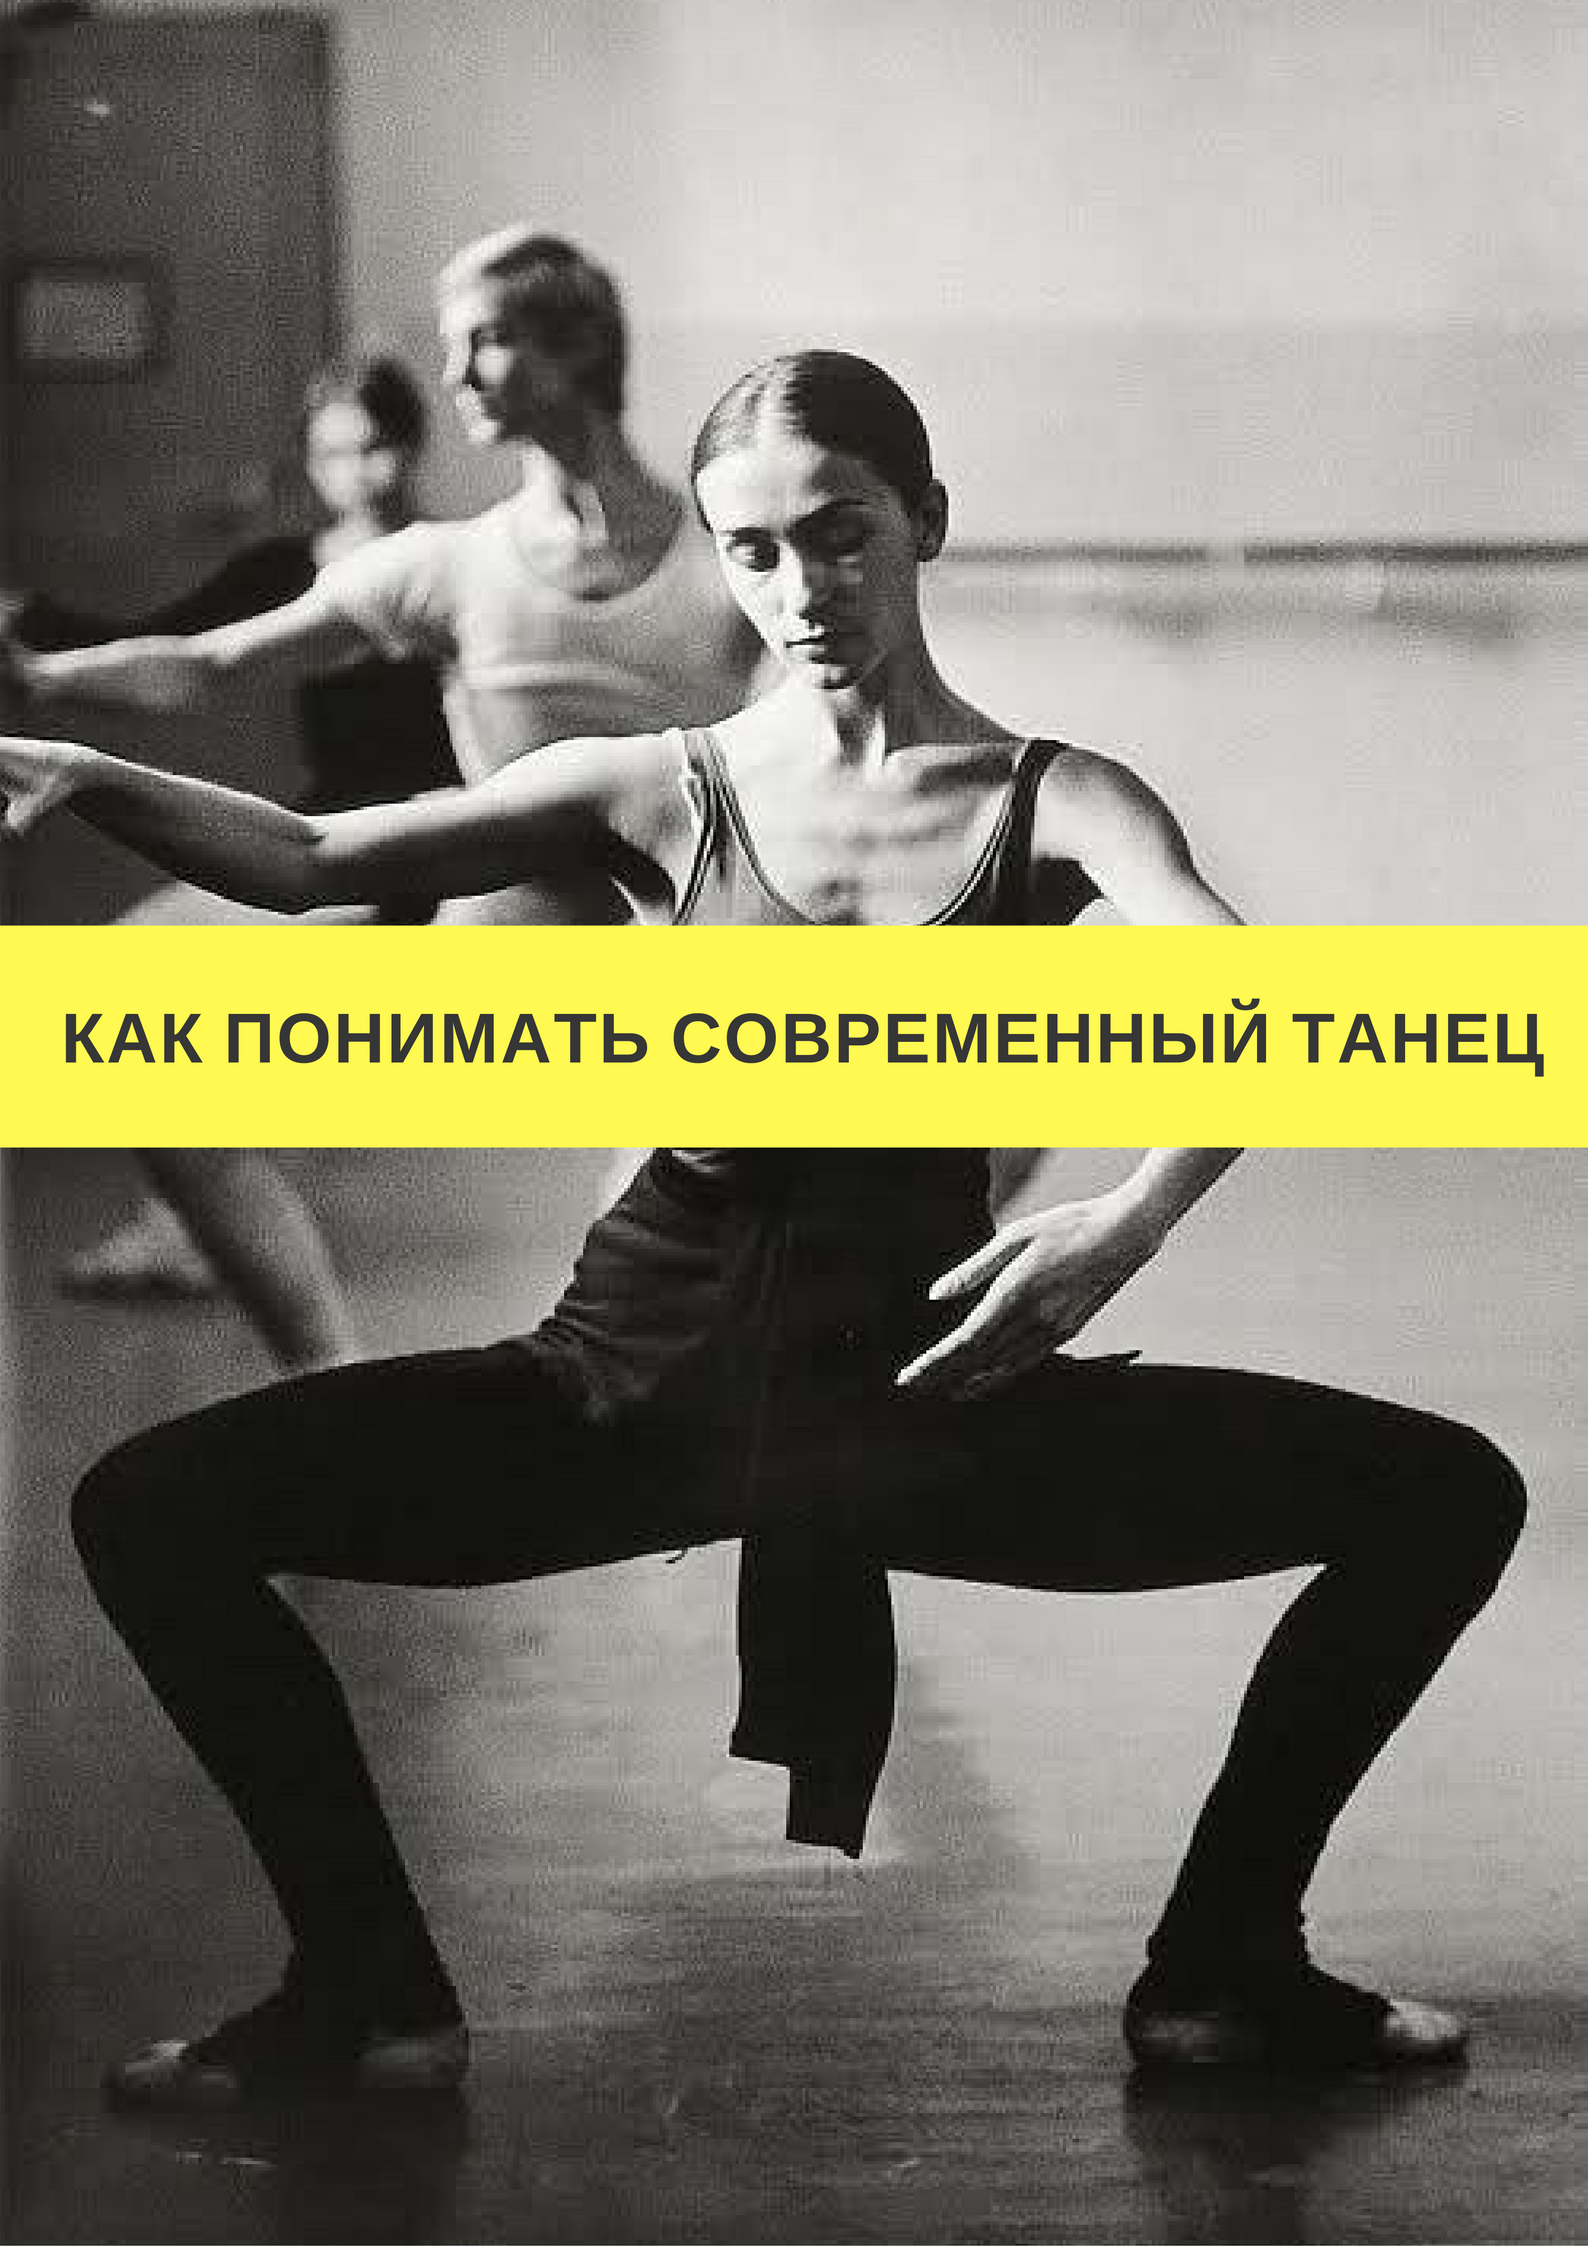 Цикличность в танце. Цикл "танец" м. Барышникова. Понедельник танцы. Как мы понимаем современность